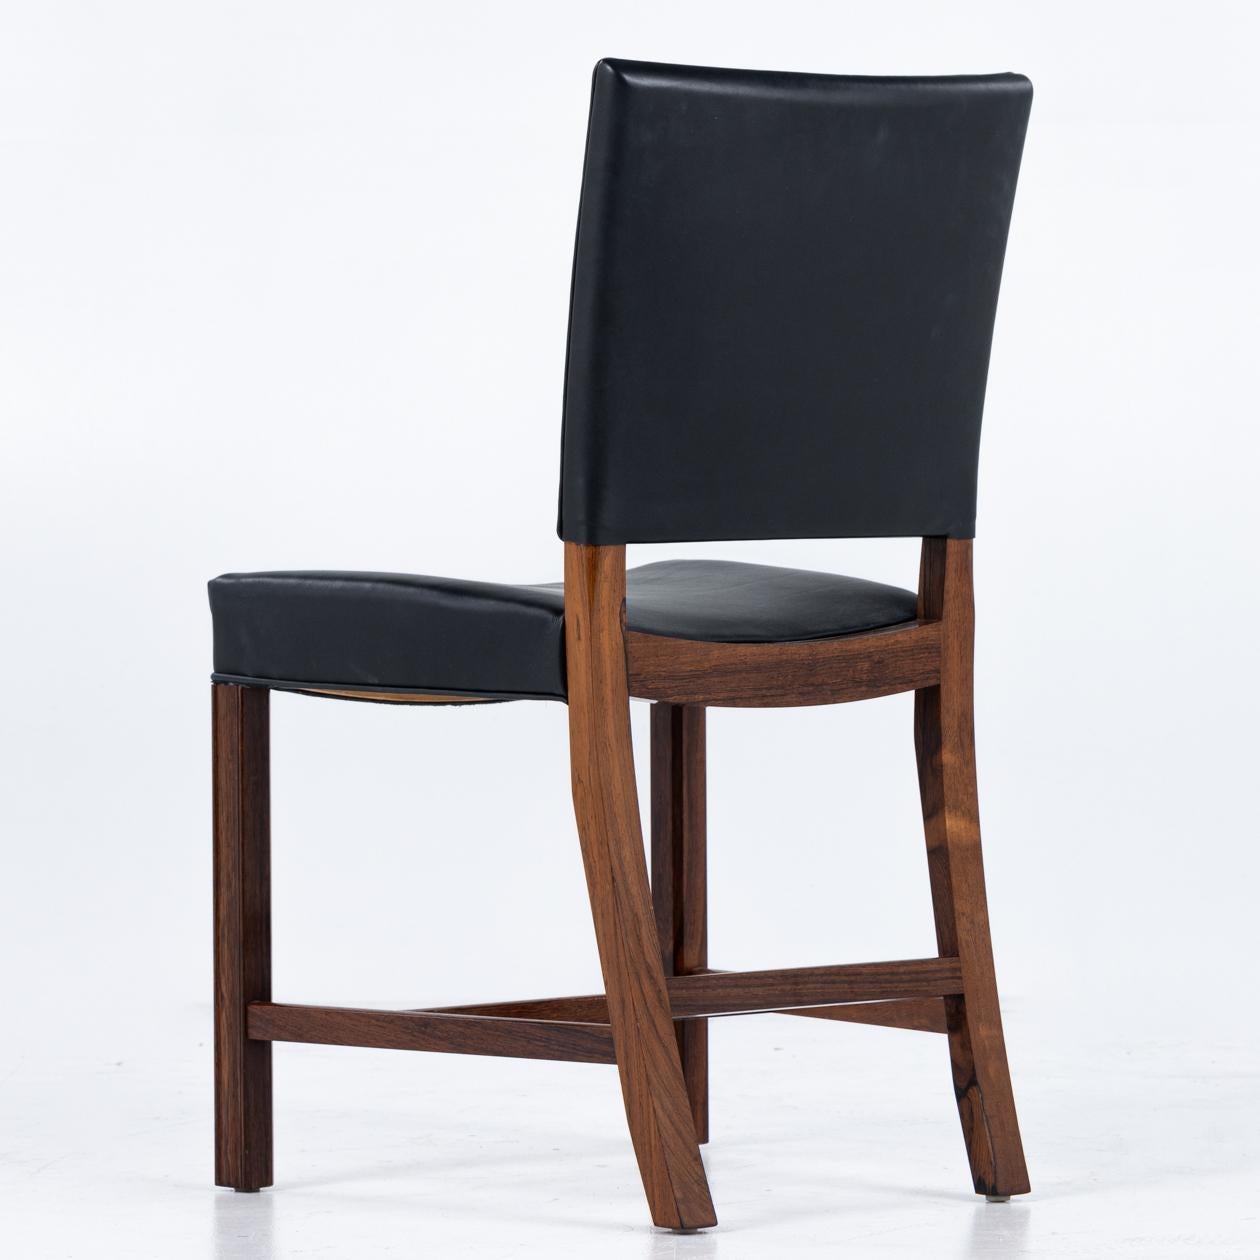 KK 3949 ensemble de six chaises en palissandre de Rio et cuir noir. Kaare Klint / Rud. Rasmussen. 